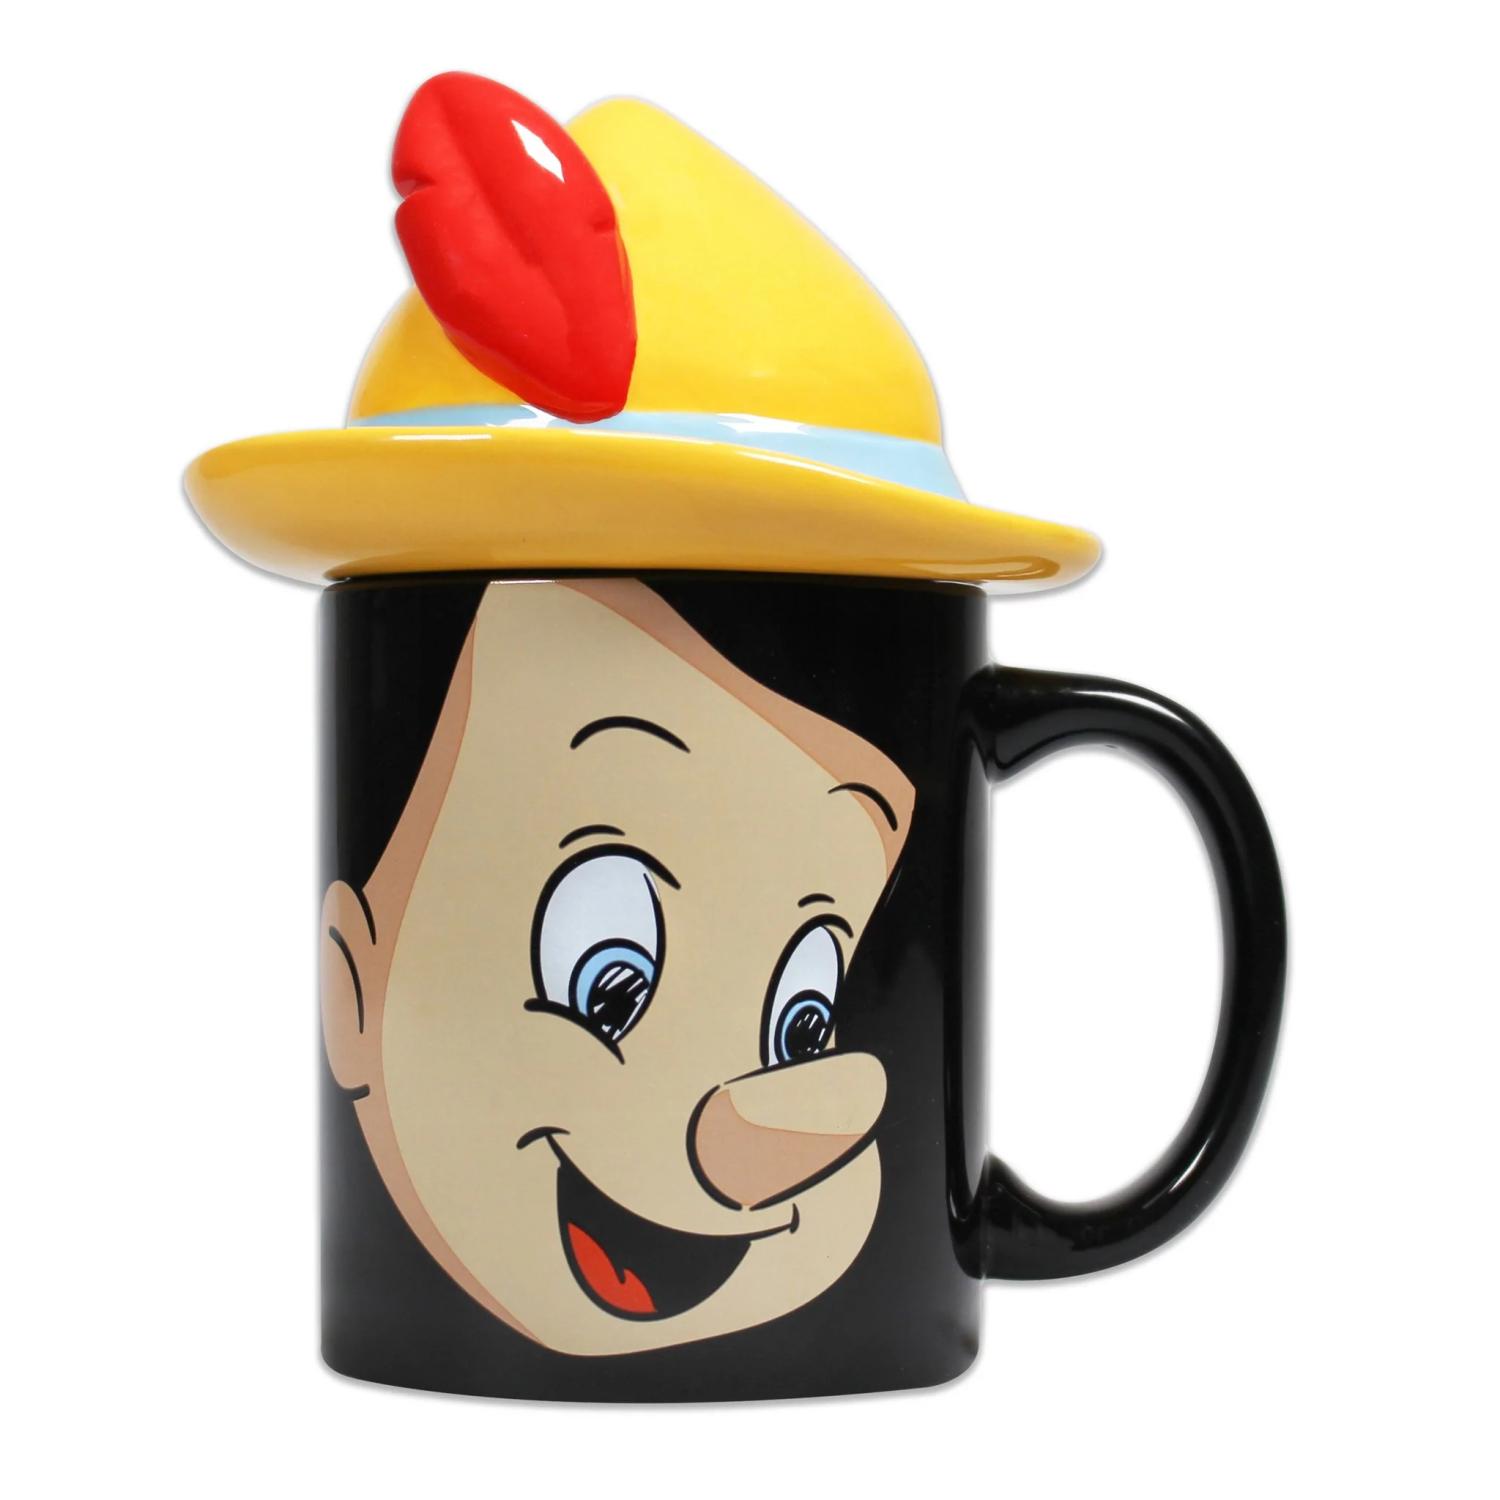 Pinocchio - Shaped lid mug